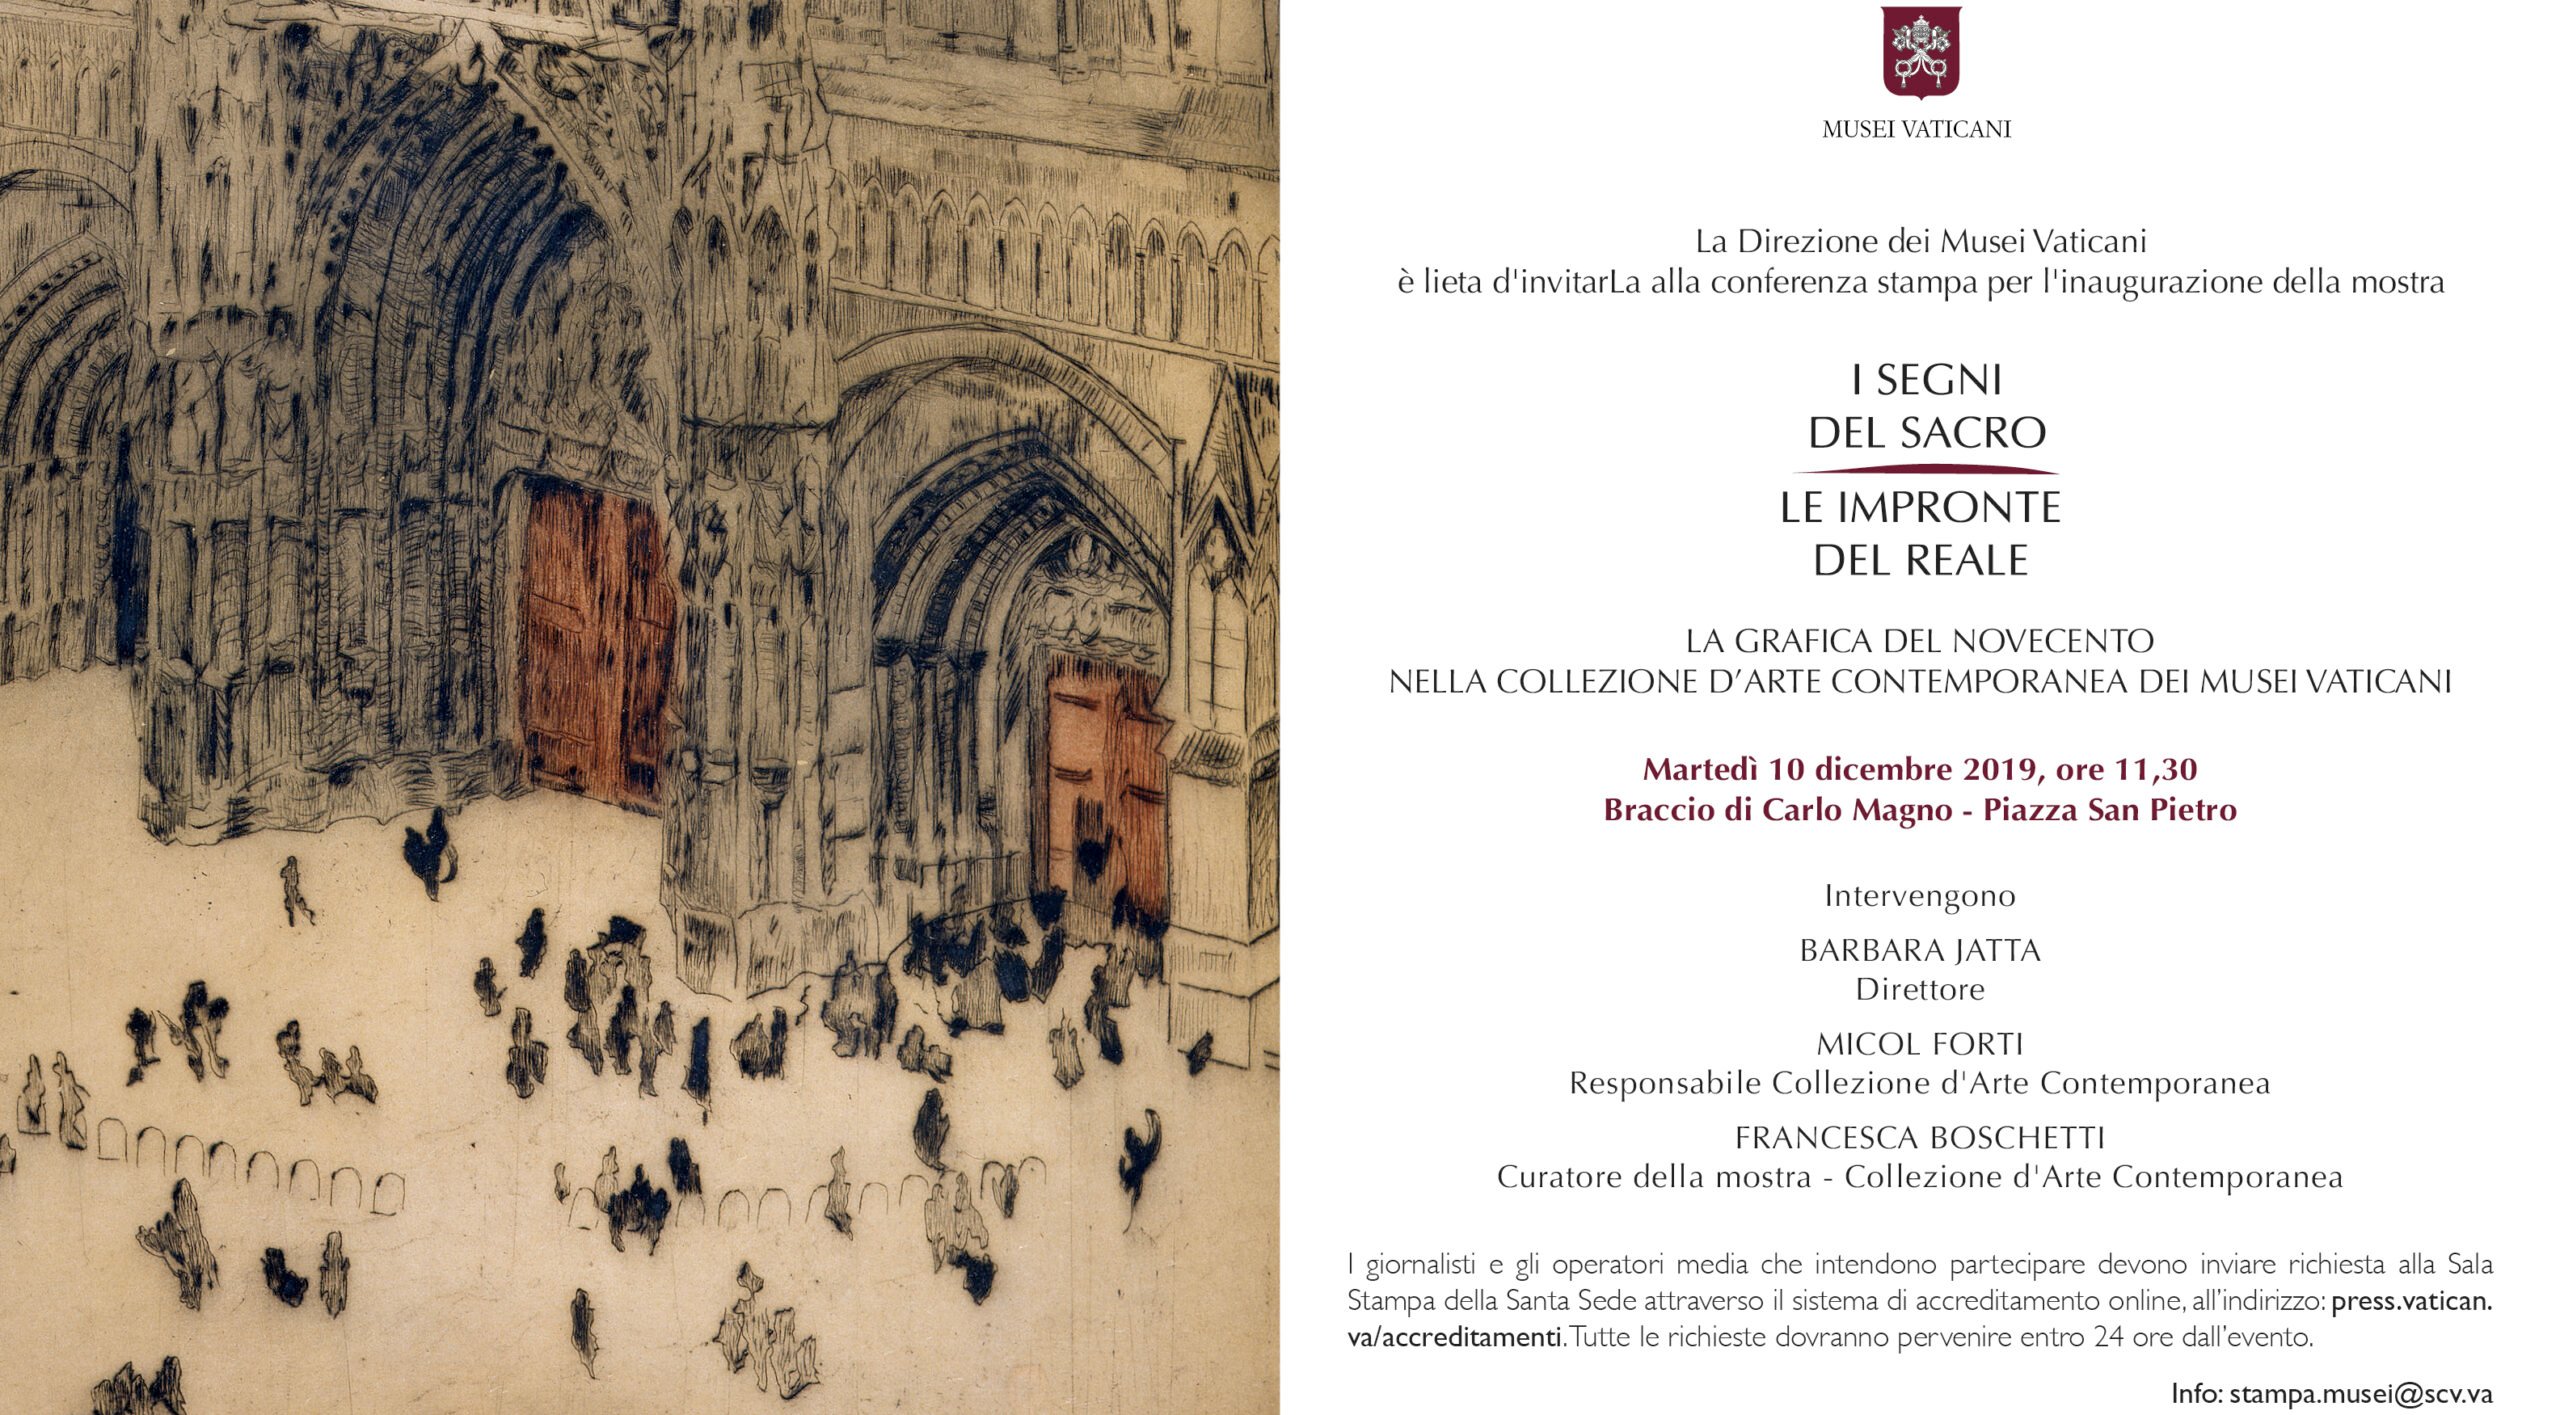 La grafica del Novecento nella Collezione d’Arte Contemporanea dei Musei Vaticani